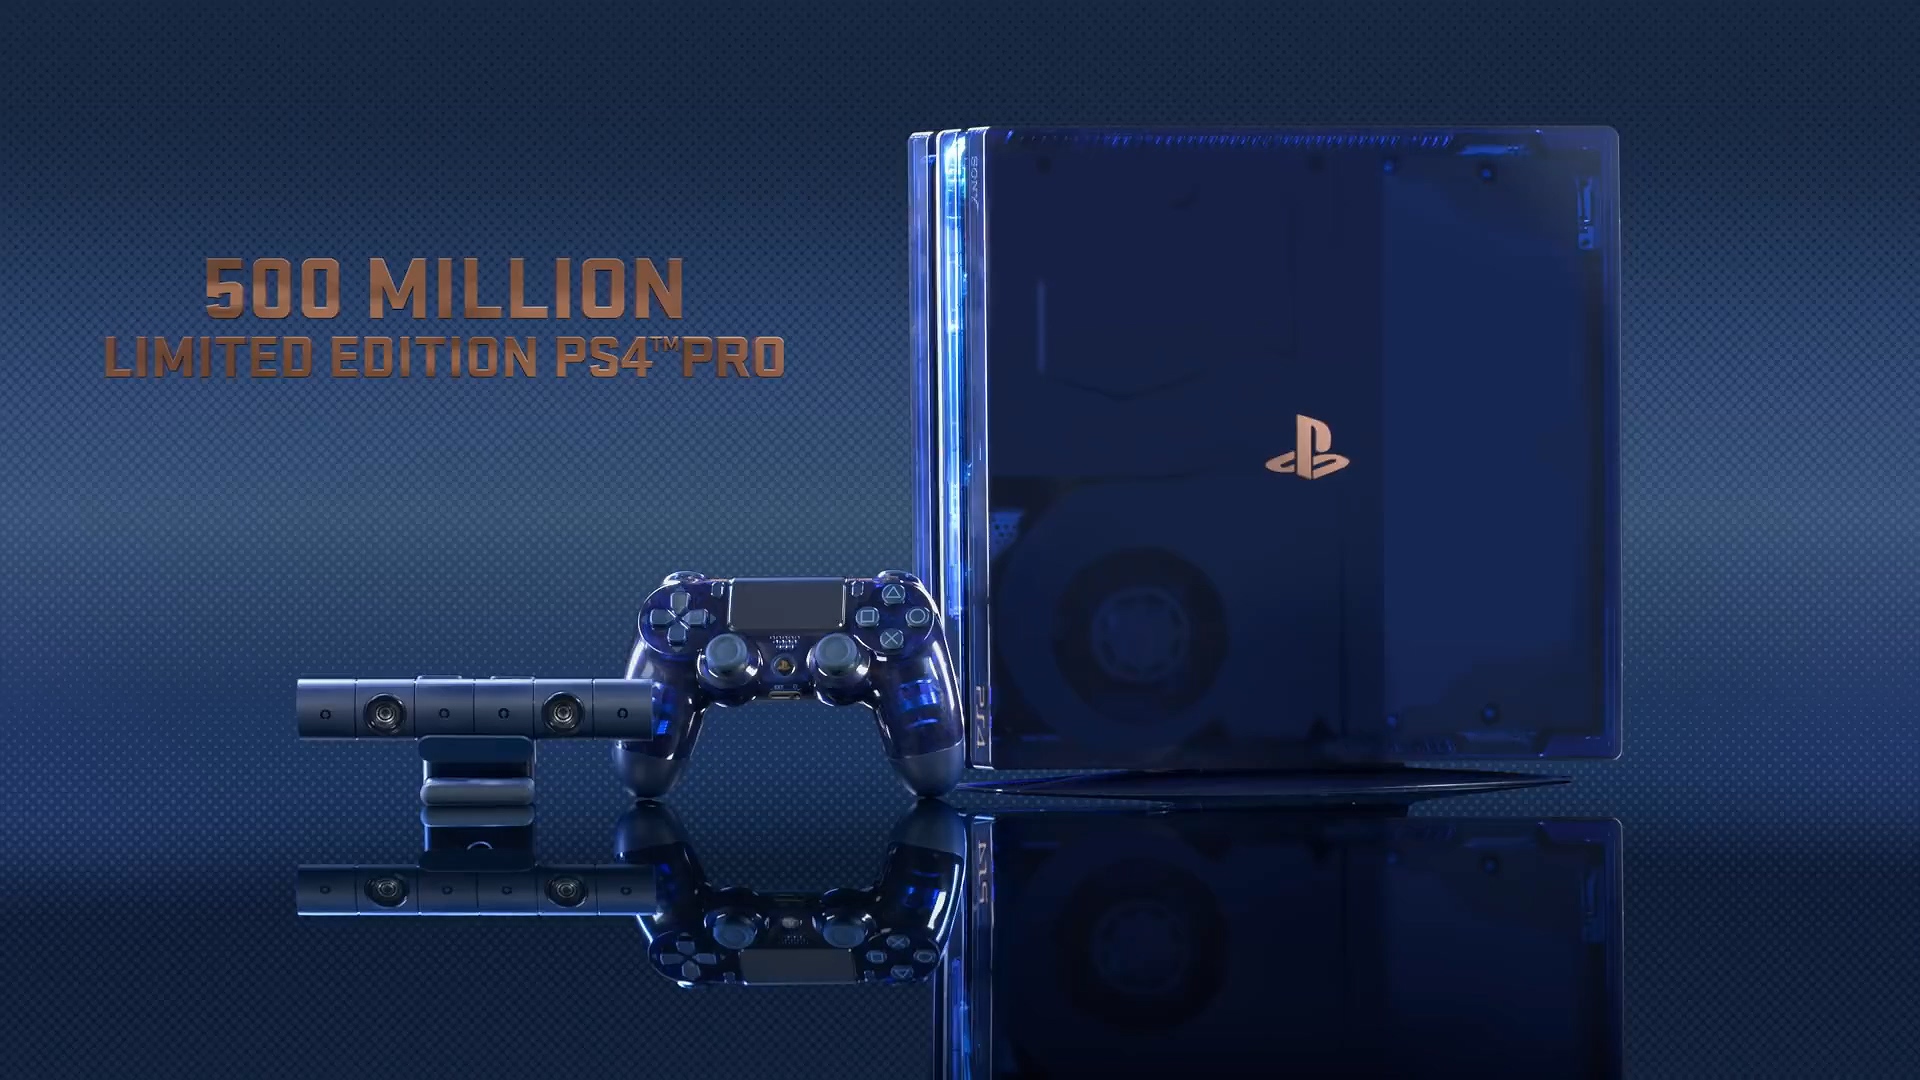 索僧公布国止5亿限制版PS4 Pro游戏机卖价3799元 足柄420元